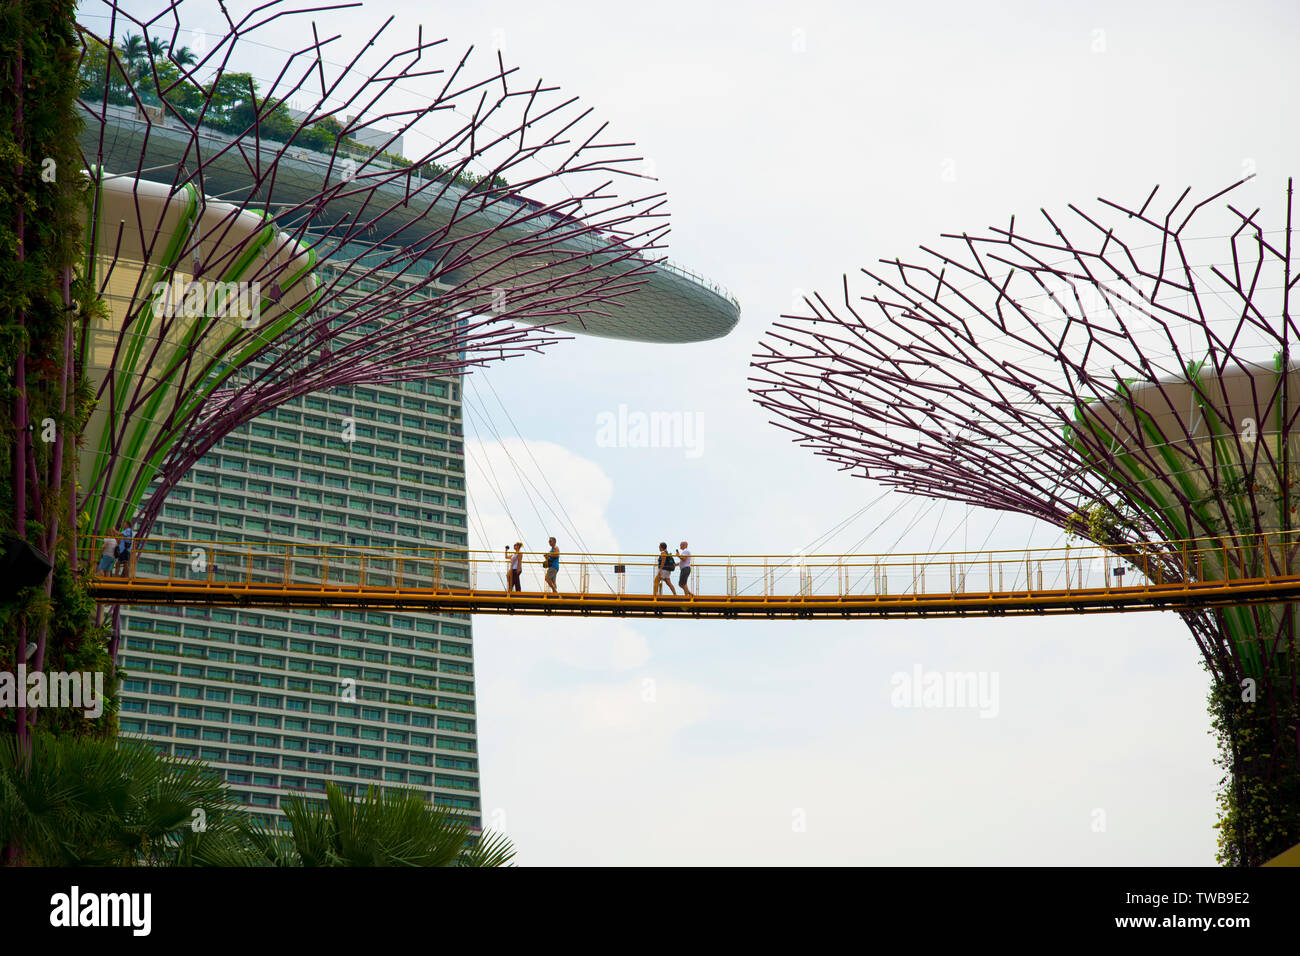 Dans le Skyway OCBC touristiques Supertree Grove au jardin par La Baie - Singapour Banque D'Images